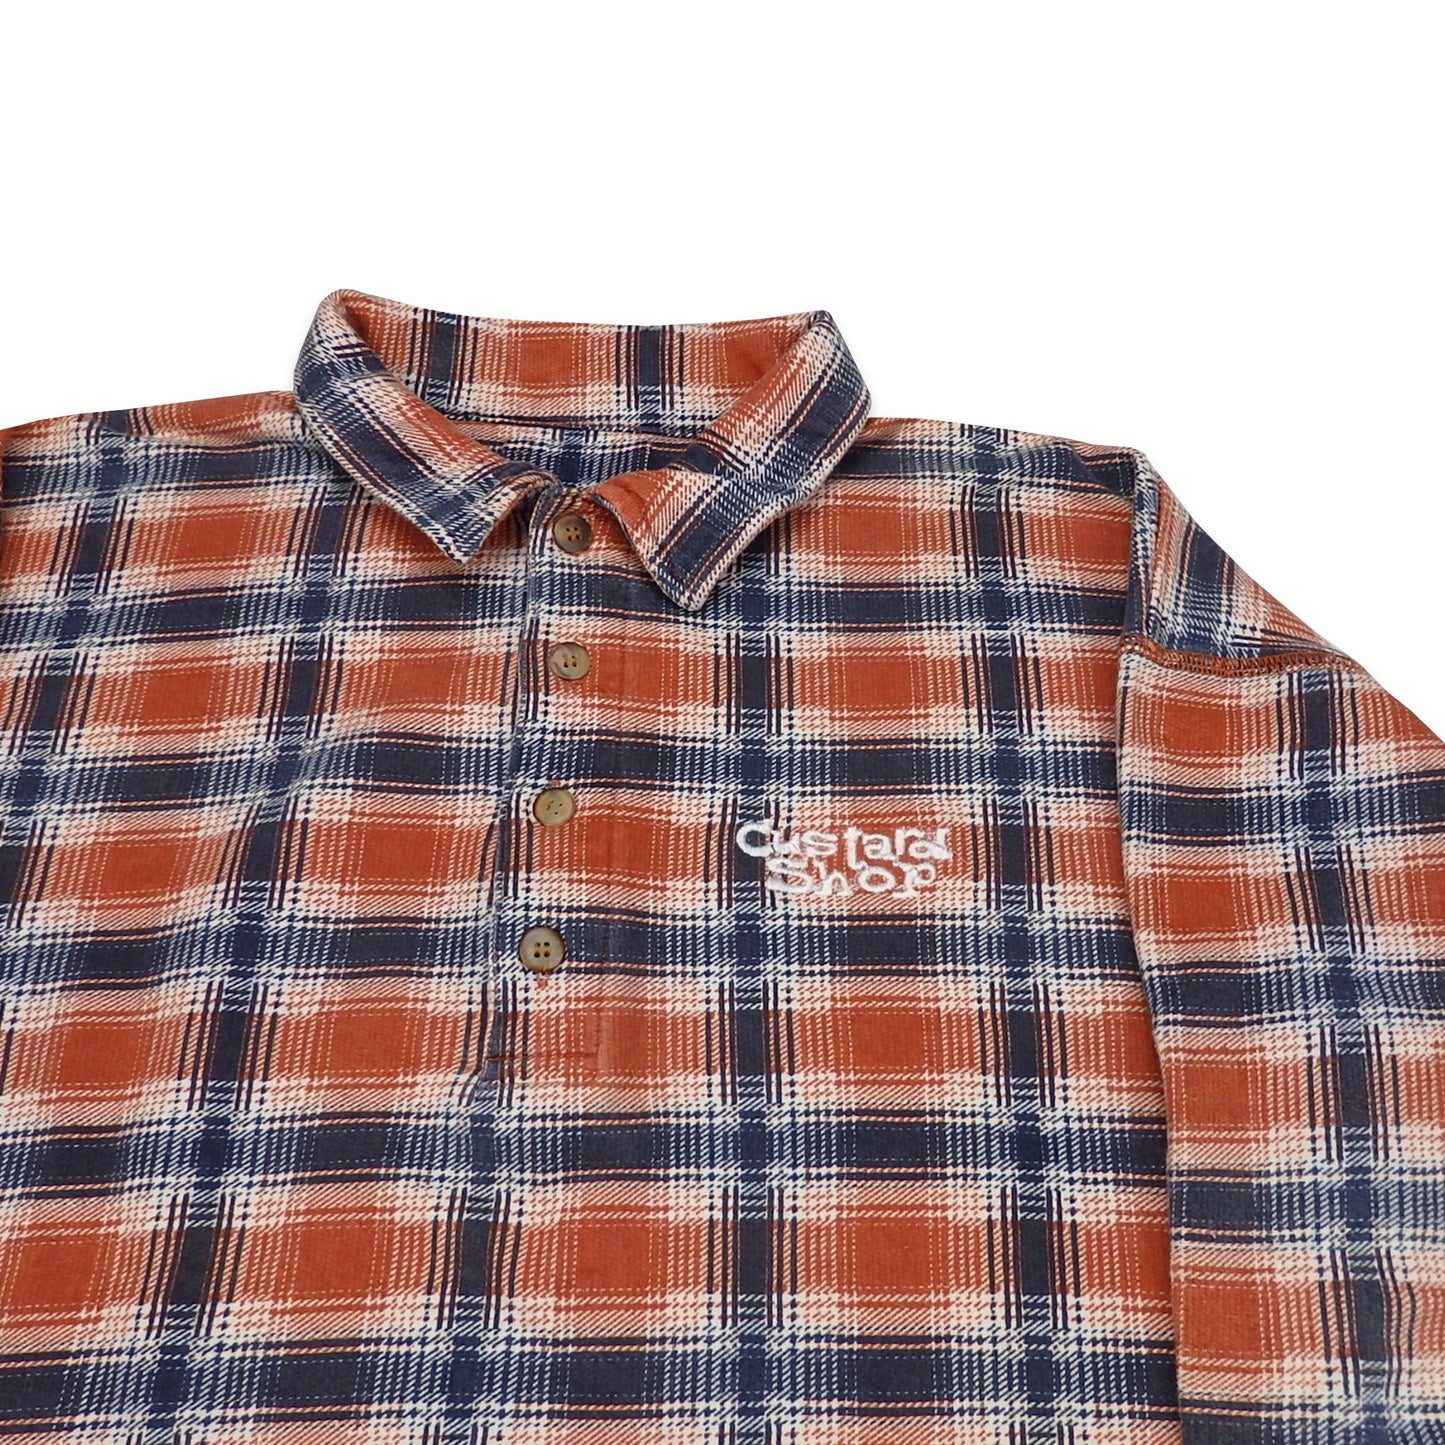 Custard Reclaimed Check Button-Up Shirt | Size Medium